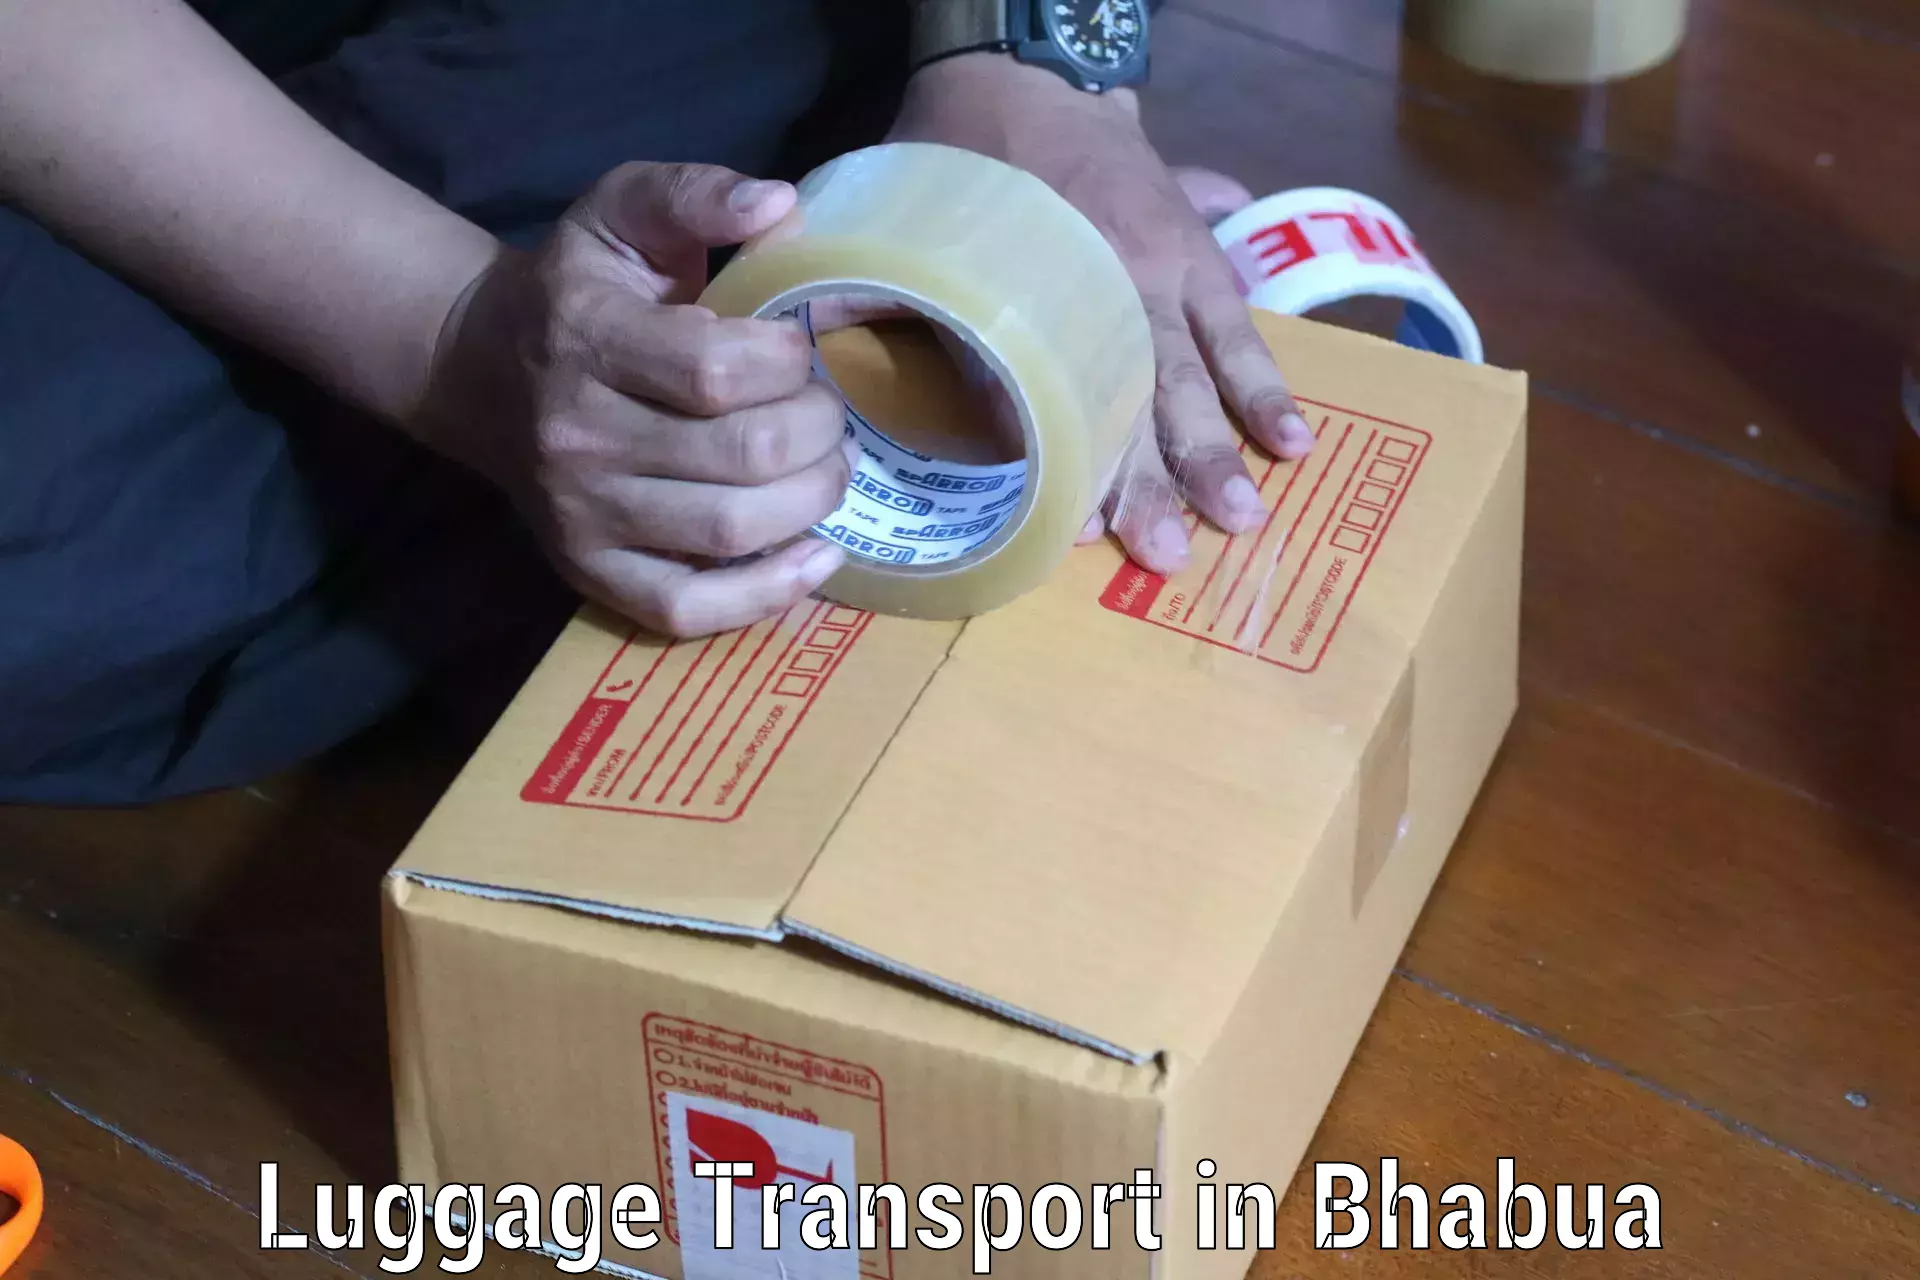 Luggage forwarding service in Bhabua